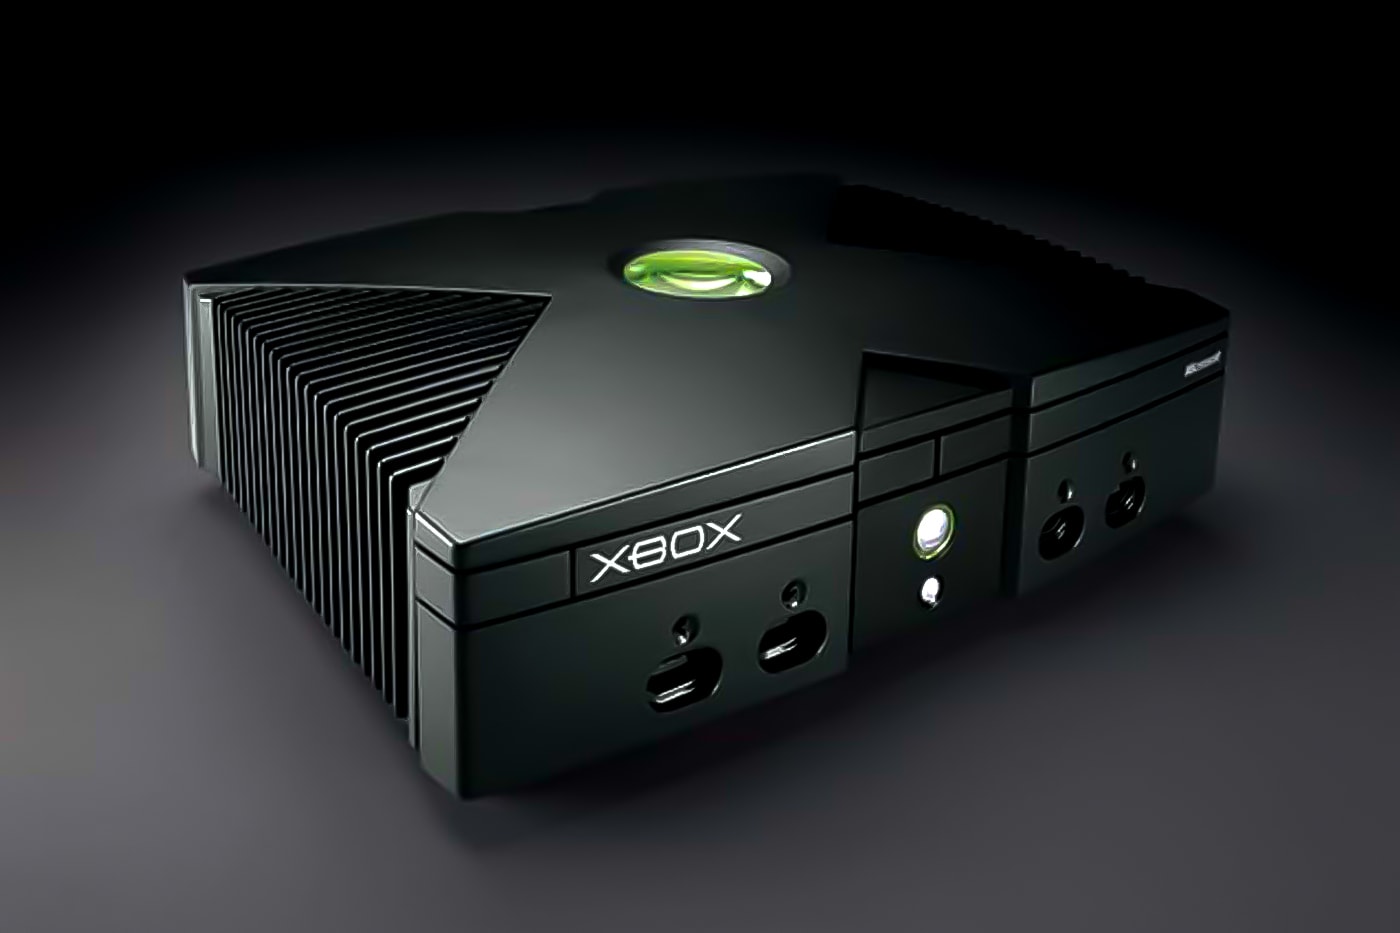 Microsoft Xbox Developer Easter Egg 20 years timmyyyyyyyyyyyyyyy original debut game console gaming system cd burn copy rip credits info